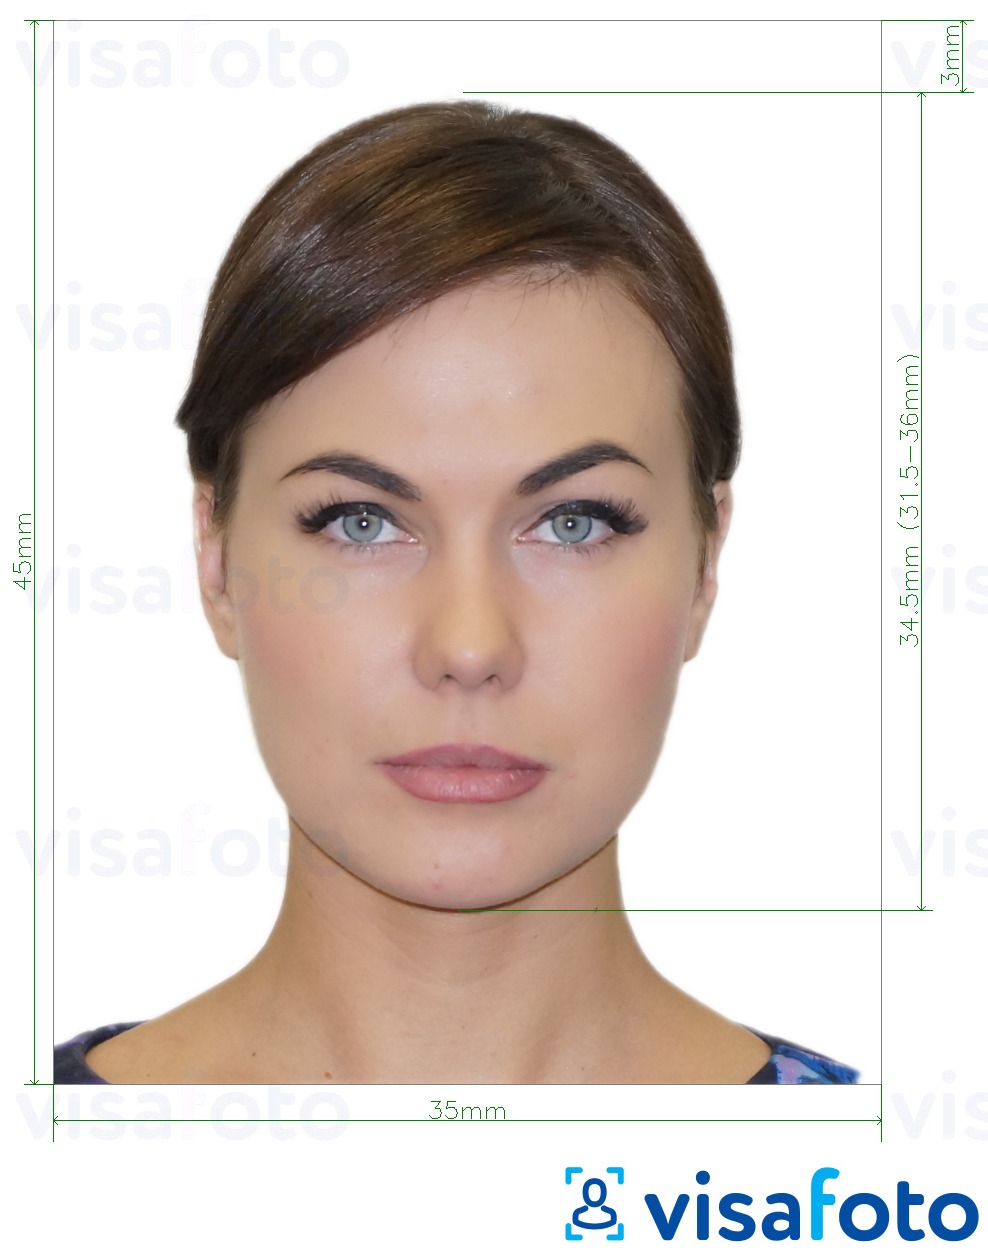 Ejemplo de foto para Tarjeta de identificación del Reino Unido 45x35 mm (4,5x3,5 cm) con la especificación del tamaño exacto